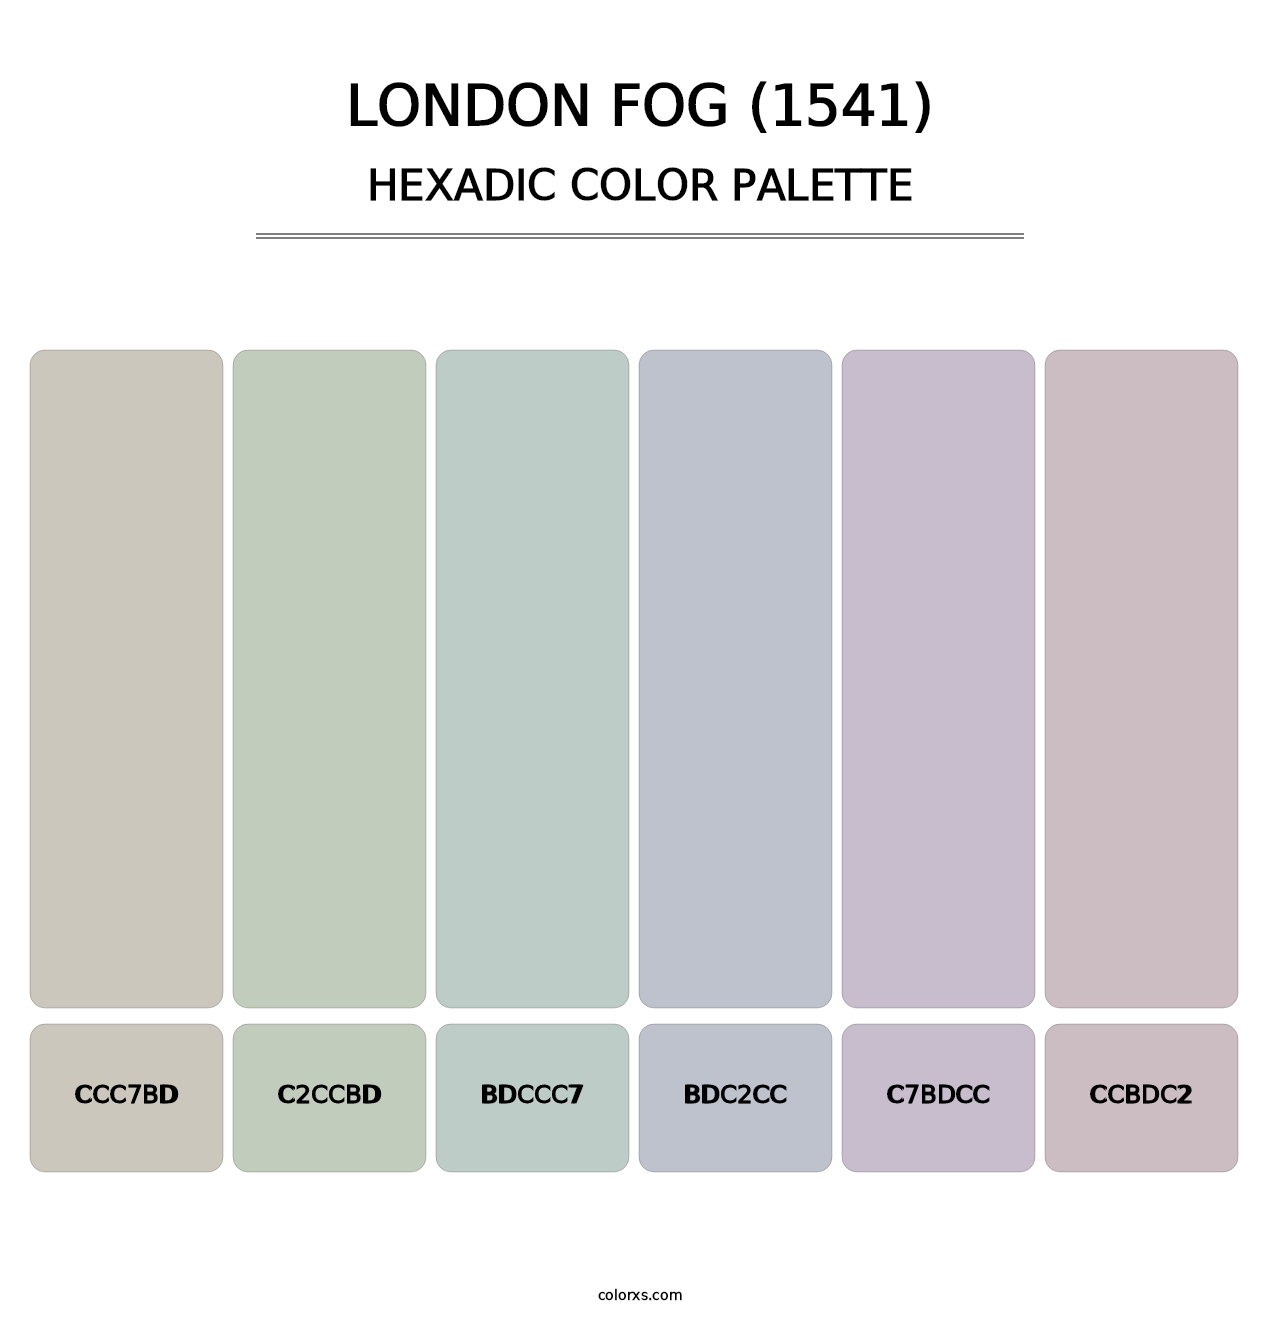 London Fog (1541) - Hexadic Color Palette